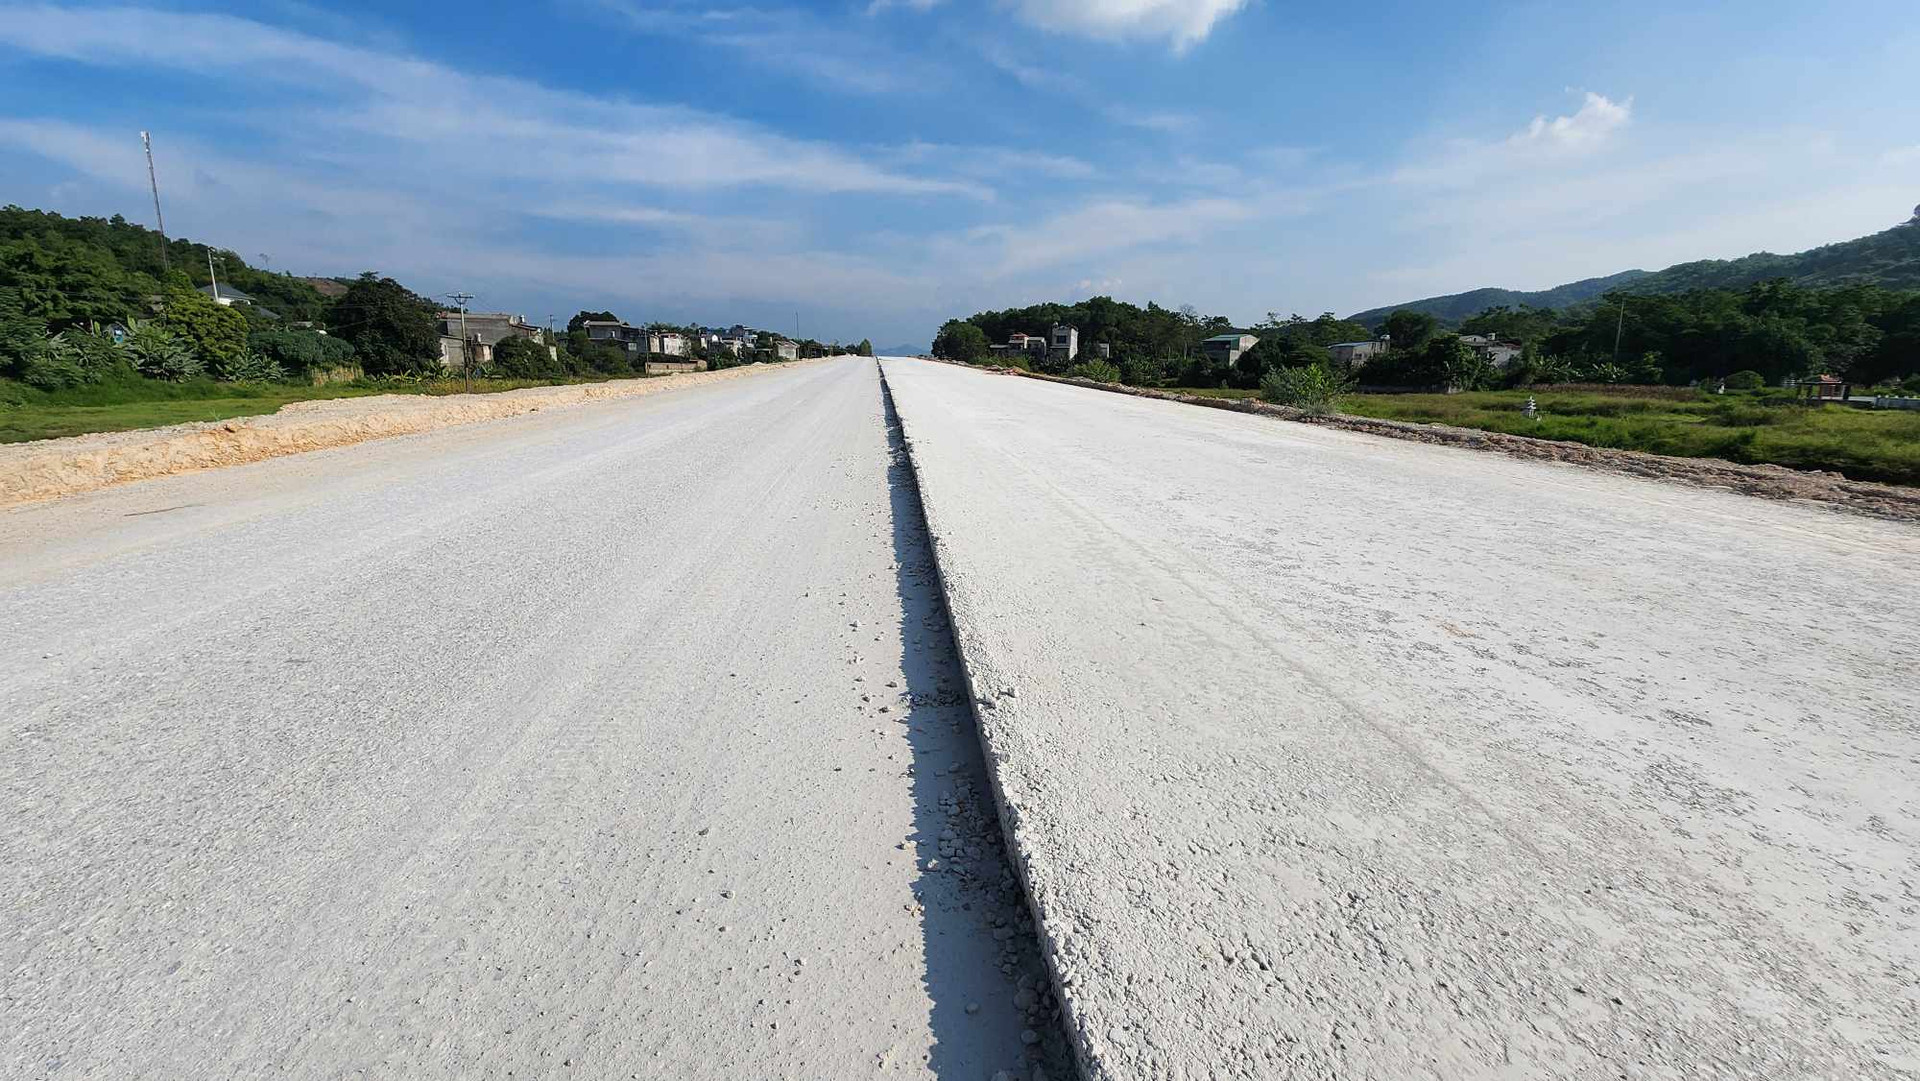 Ngày 29.5.2023 phê duyệt điều chỉnh chủ trương đầu tư dự án đầu tư xây dựng đường cao tốc Tuyên Quang - Phú Thọ kết nối với cao tốc Nội Bài - Lào Cai đã bổ sung thêm 500 tỉ đồng cho dự án này để hoàn thành giai đoạn 2 với 4 làn xe ngay trong năm 2023. Ảnh: Ngô Hùng